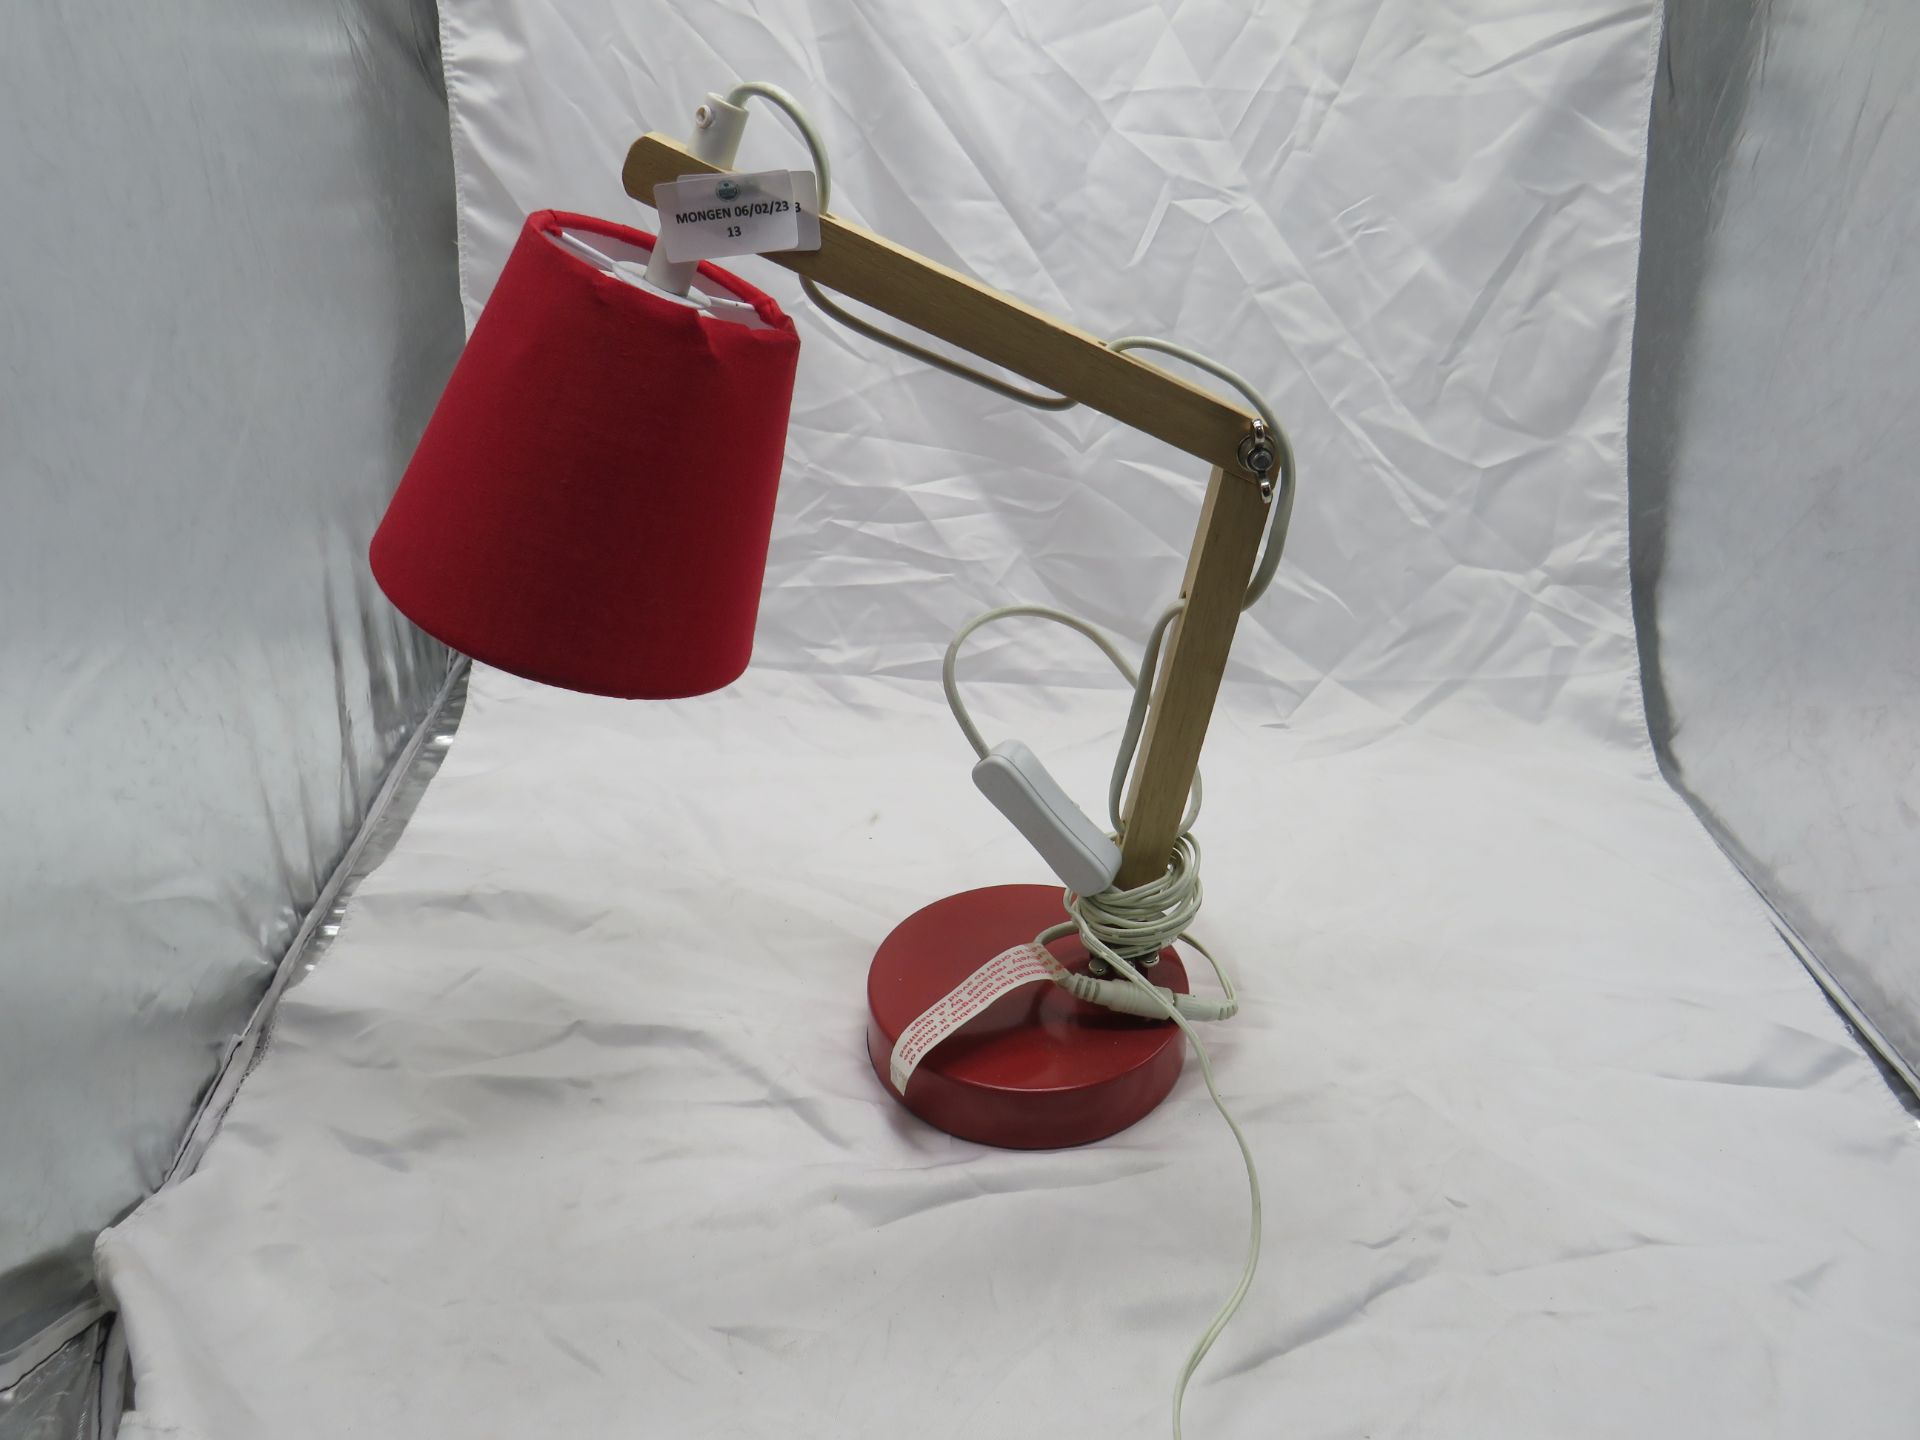 Adjustable Wooden Red LED Desk Lamp - No Packaging.